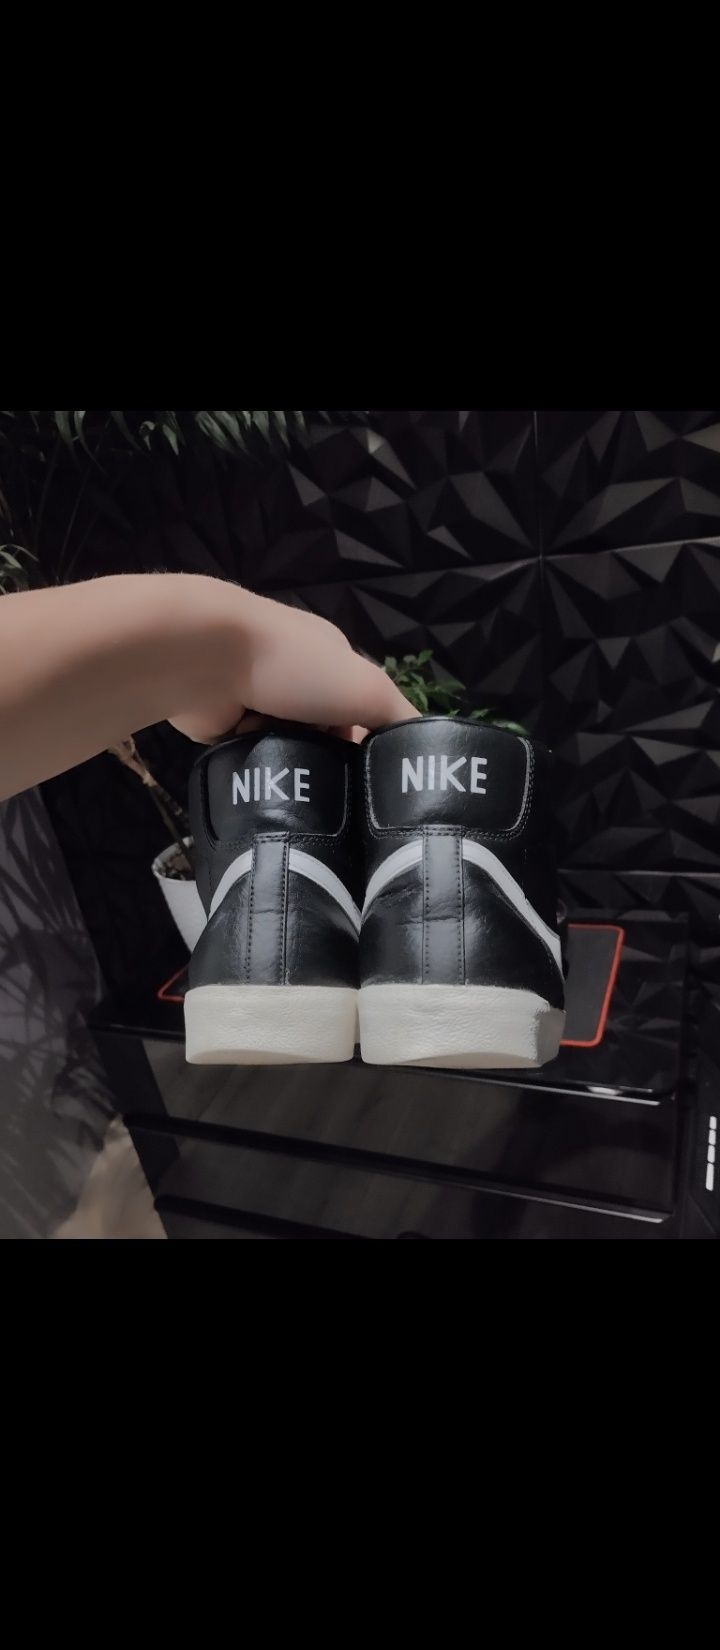 Nike blazzery mid czarno/biale bardzo dobry stan